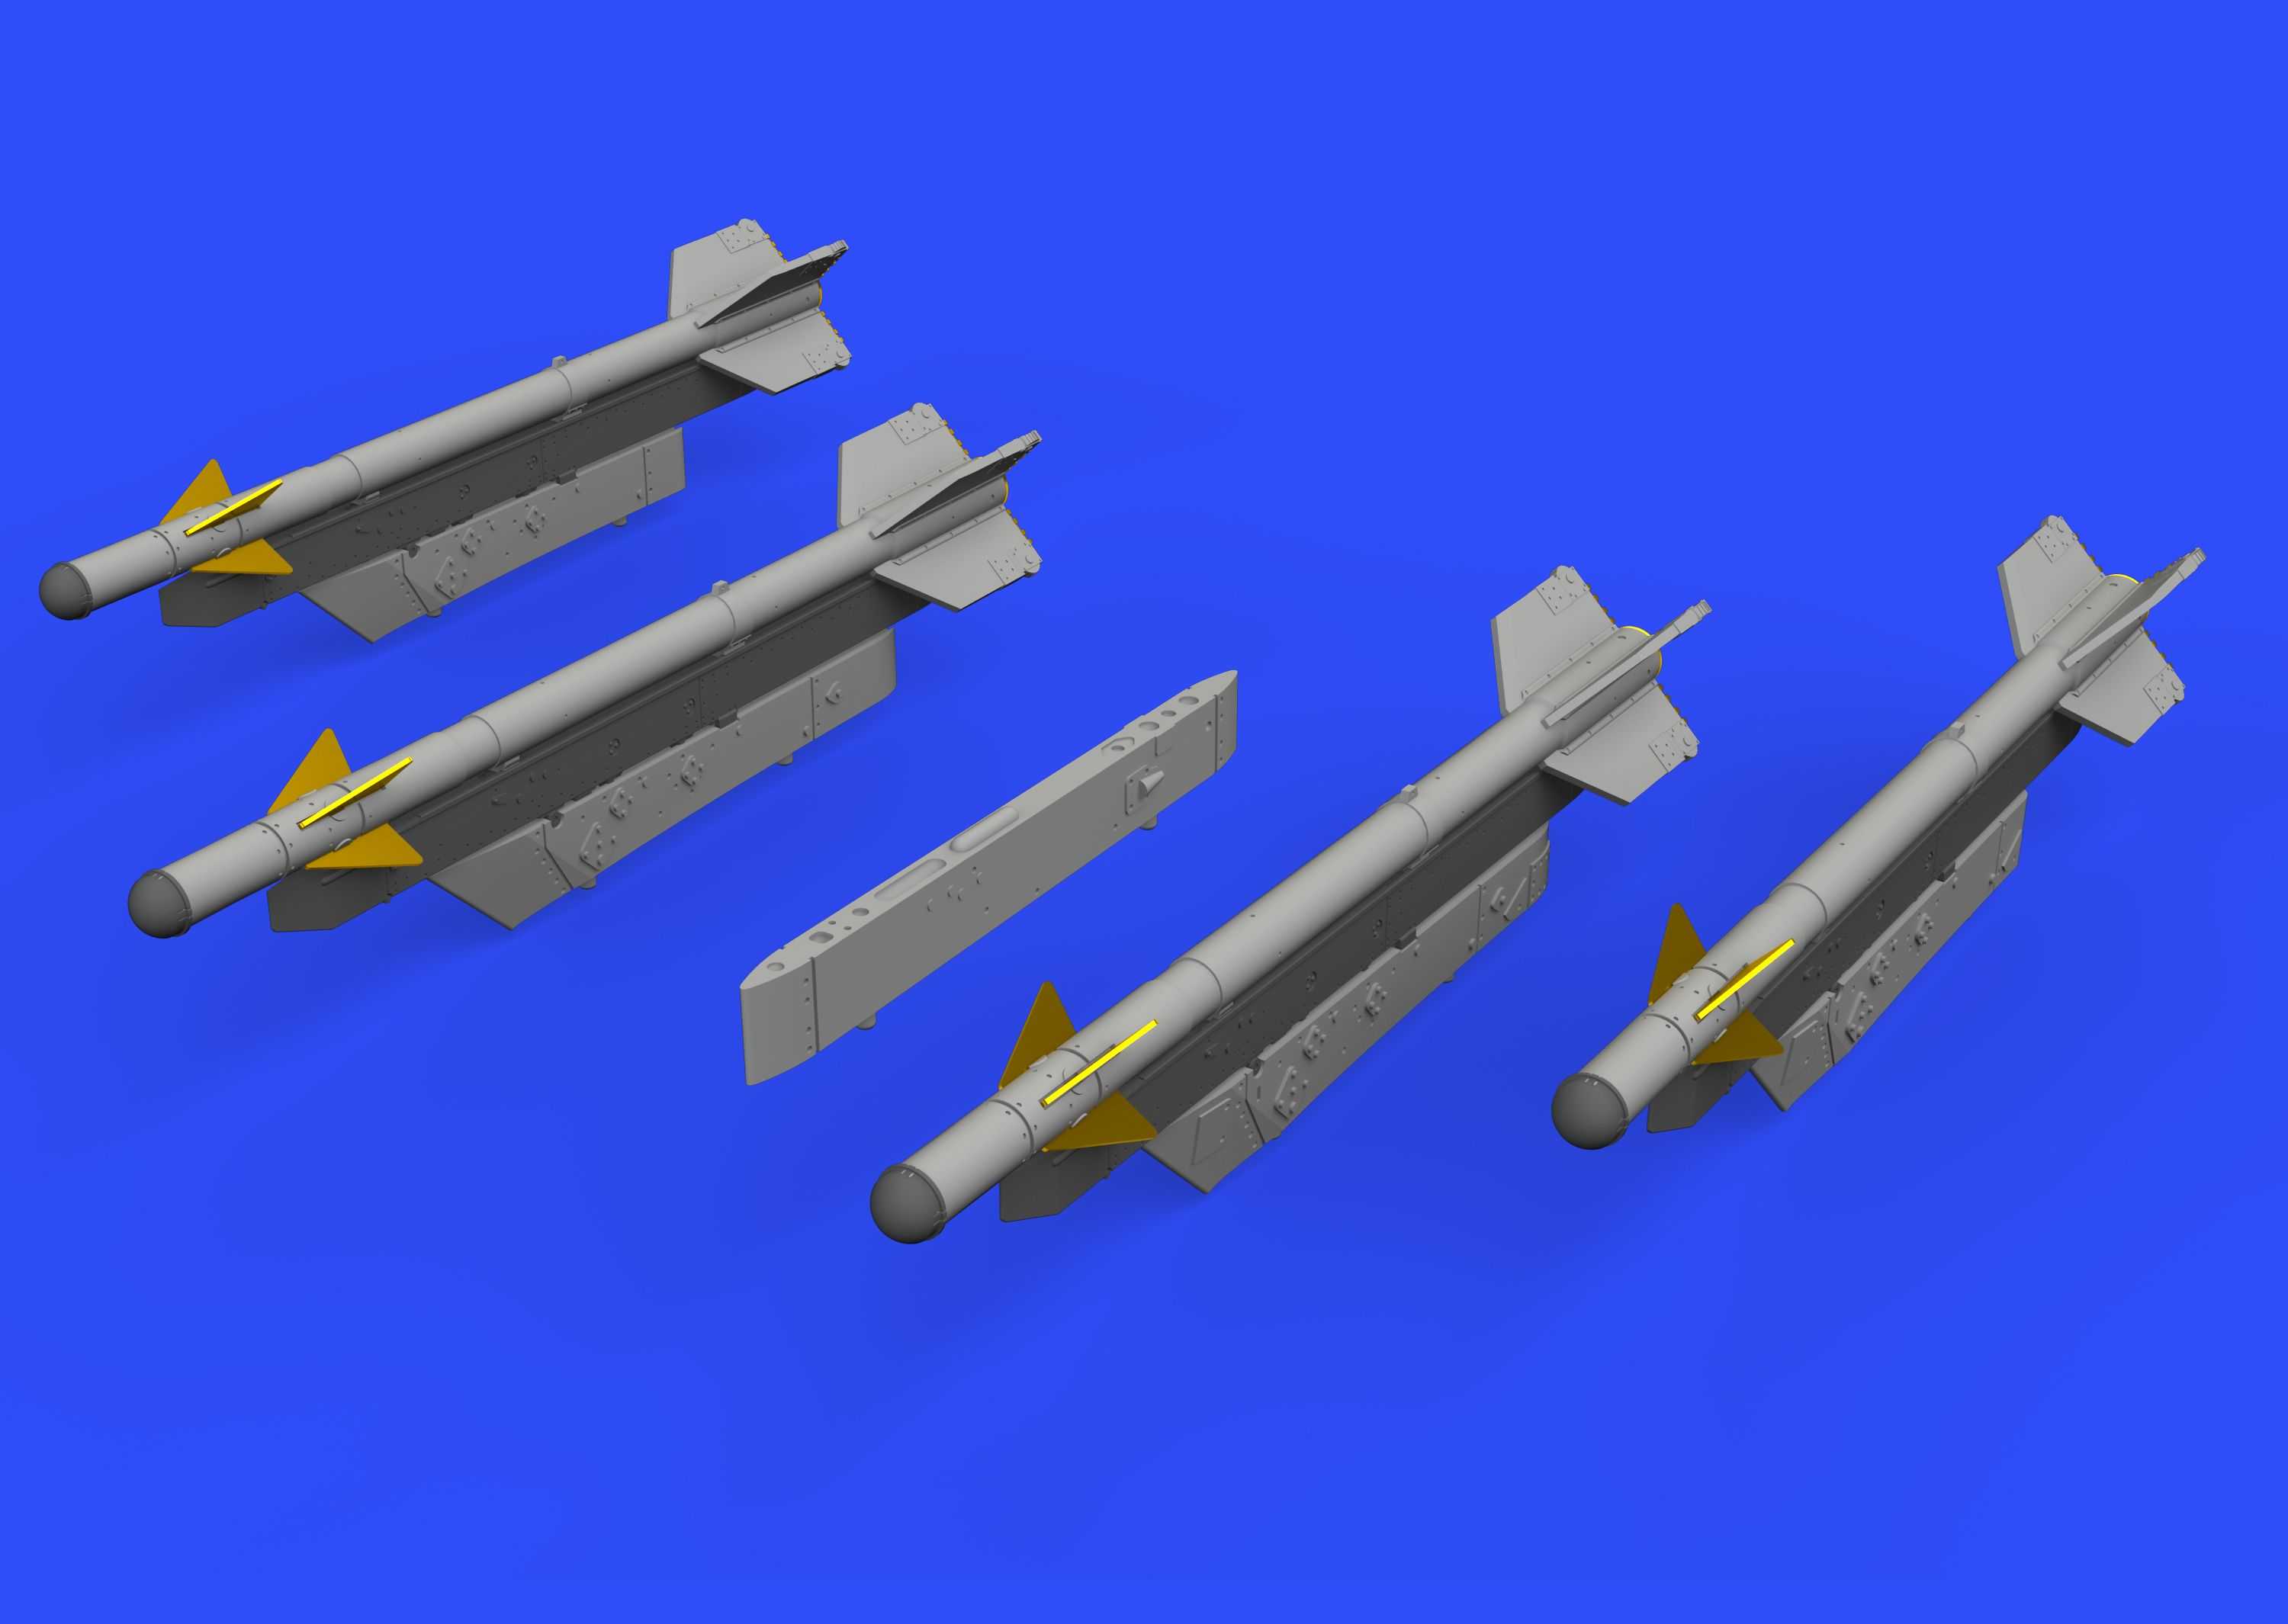 Accessoires - Missiles R-3S avec pylônes pour Mikoyan MiG-21 (conçus p